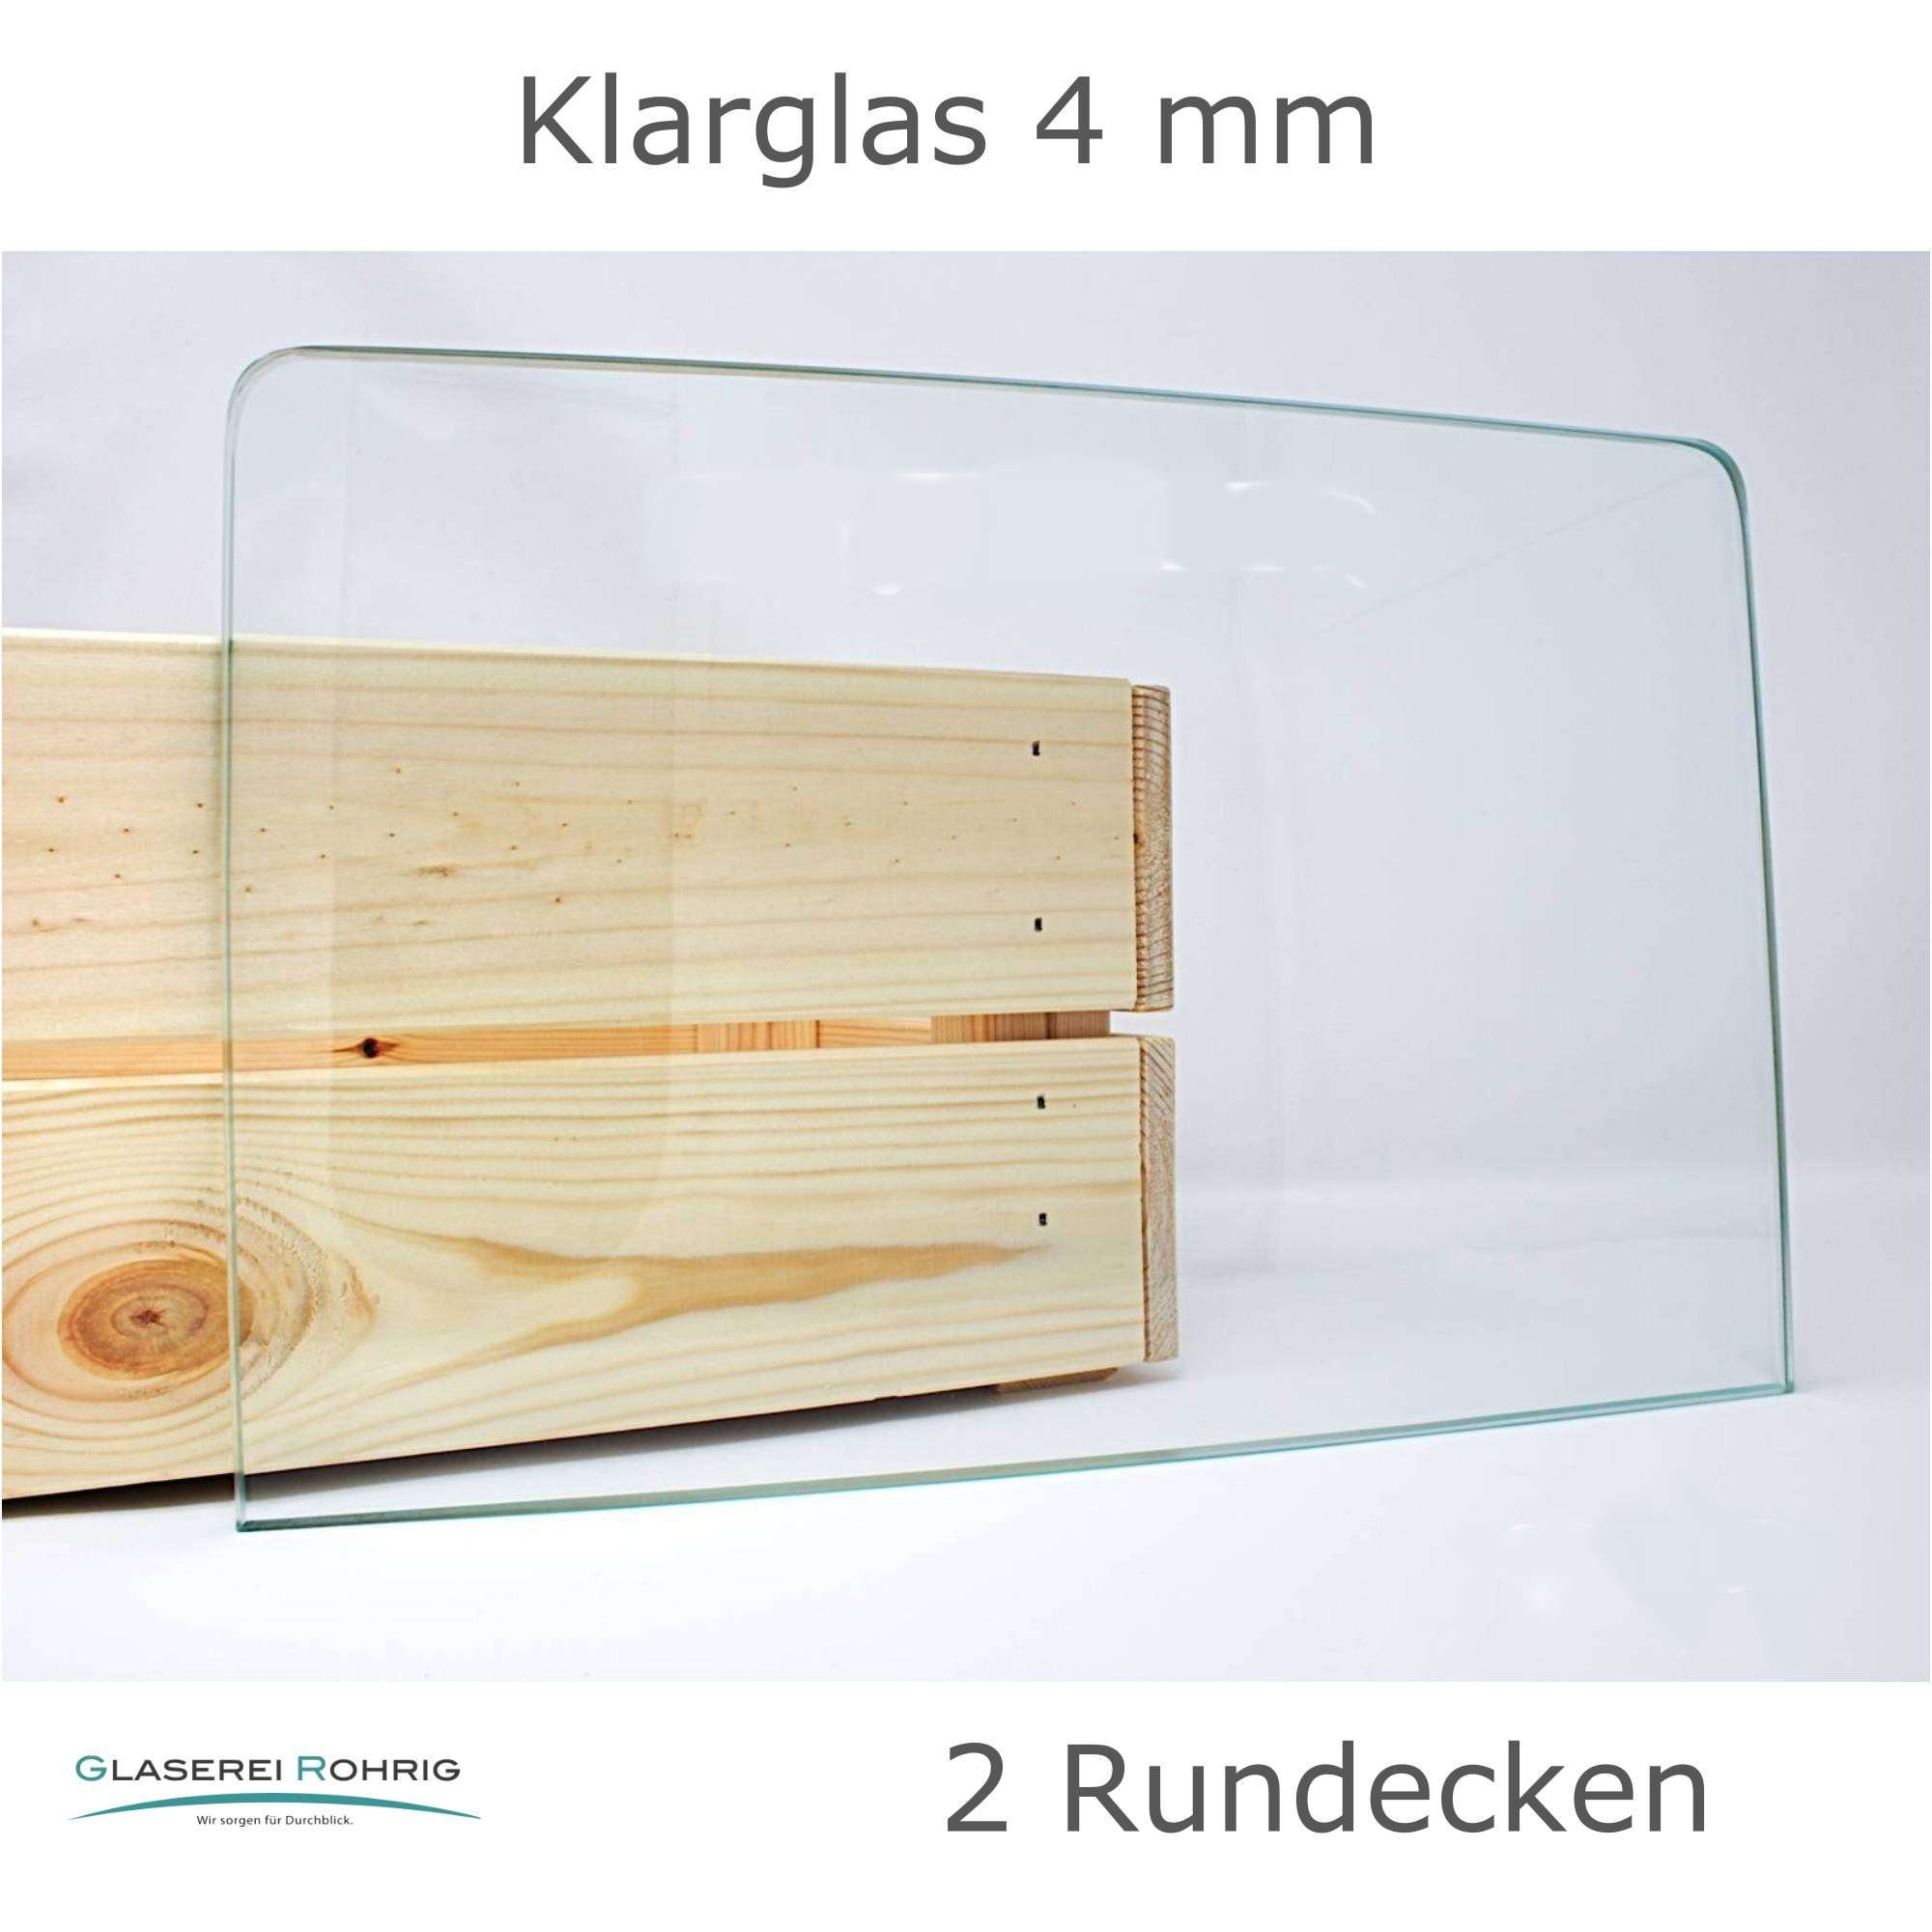 EUR/qm) Klarglas - Rundecken Viele Kühlschrank 2 - - (89,96 Maße! 4 mm Glaserei Rohrig Einlegeboden